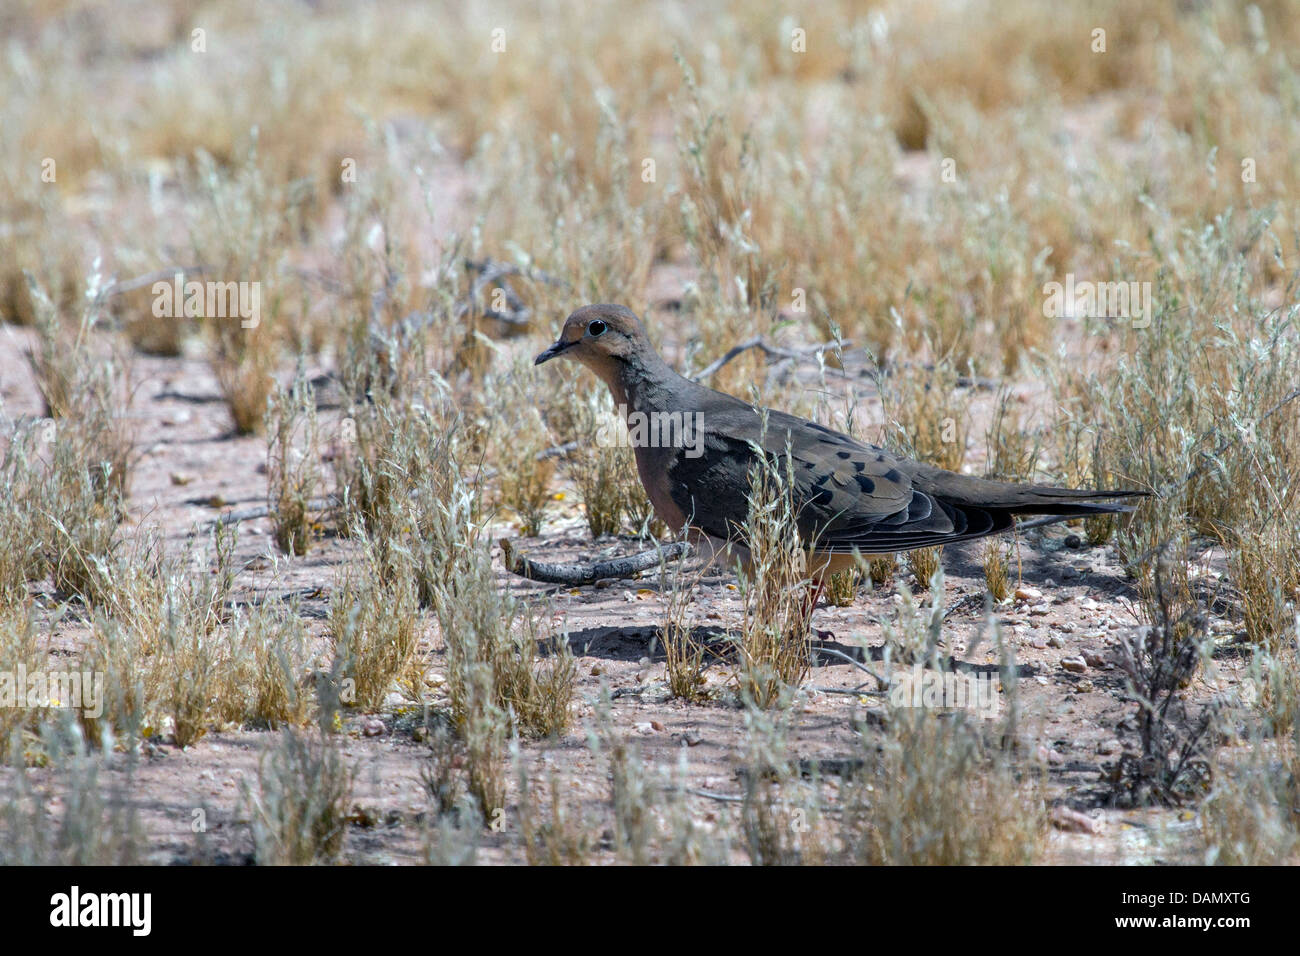 Duelo dove (Zenaida macroura), buscando alimento en el suelo, Phoenix, Arizona, EE.UU. Foto de stock